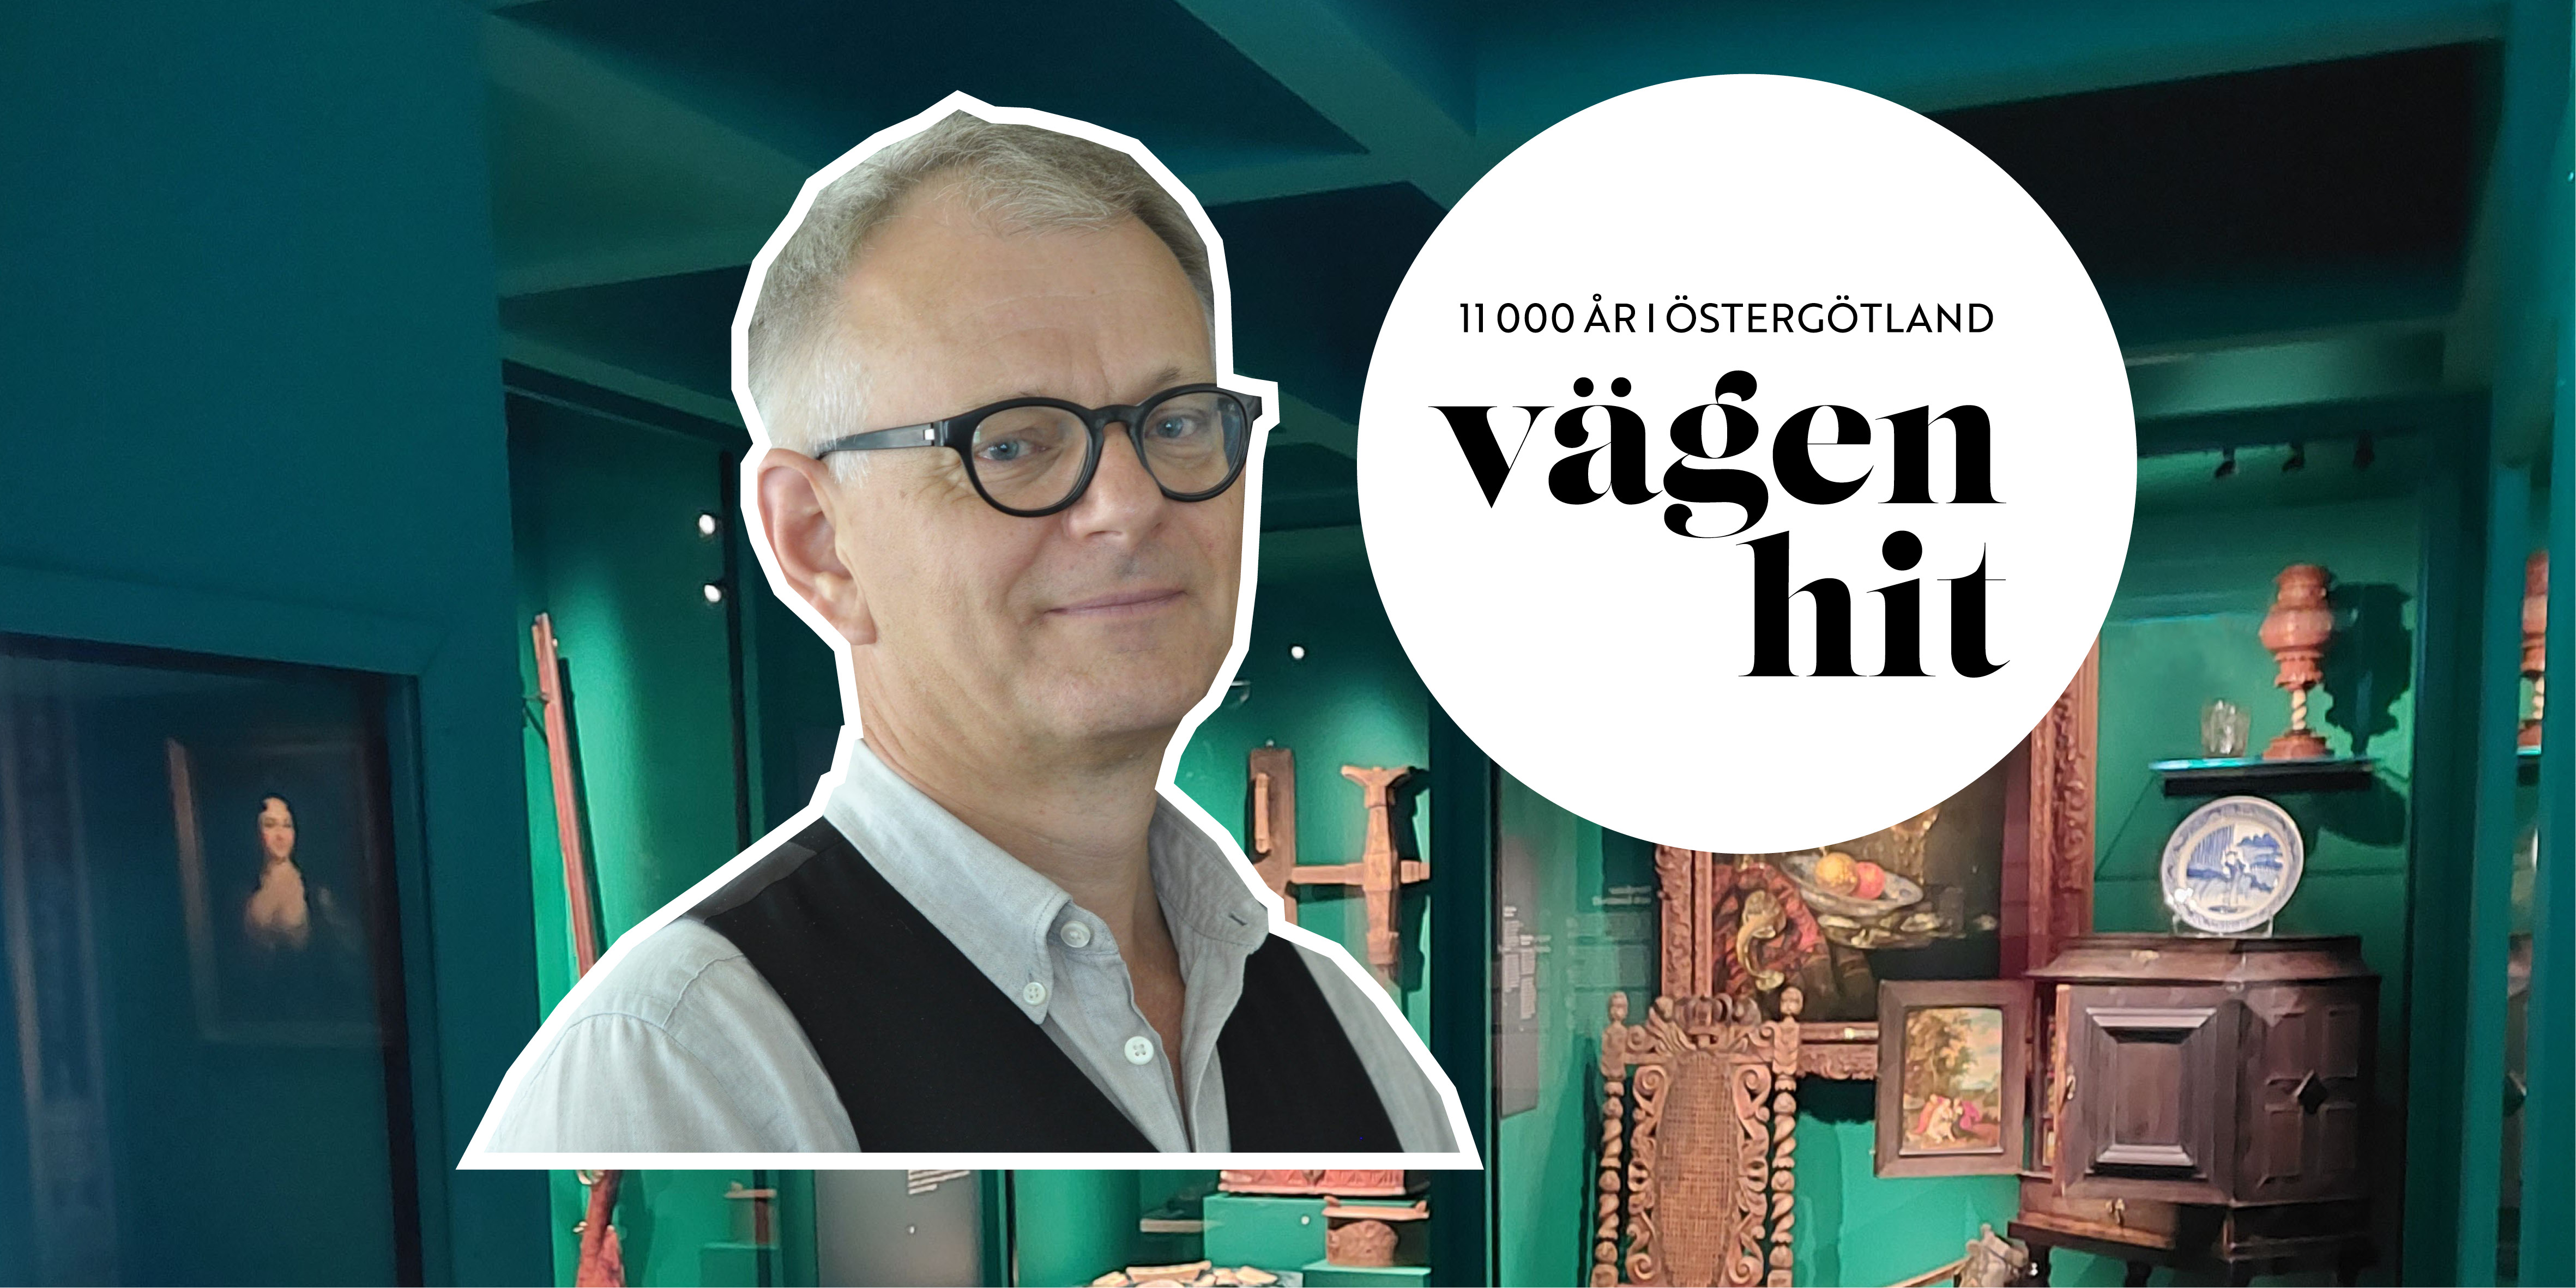 Kollage med arkeologen Göran Tagesson och utställningen Vägen hit. På bilden finns även en puff med texten "11 000 år i Östergötland - Vägen hit".